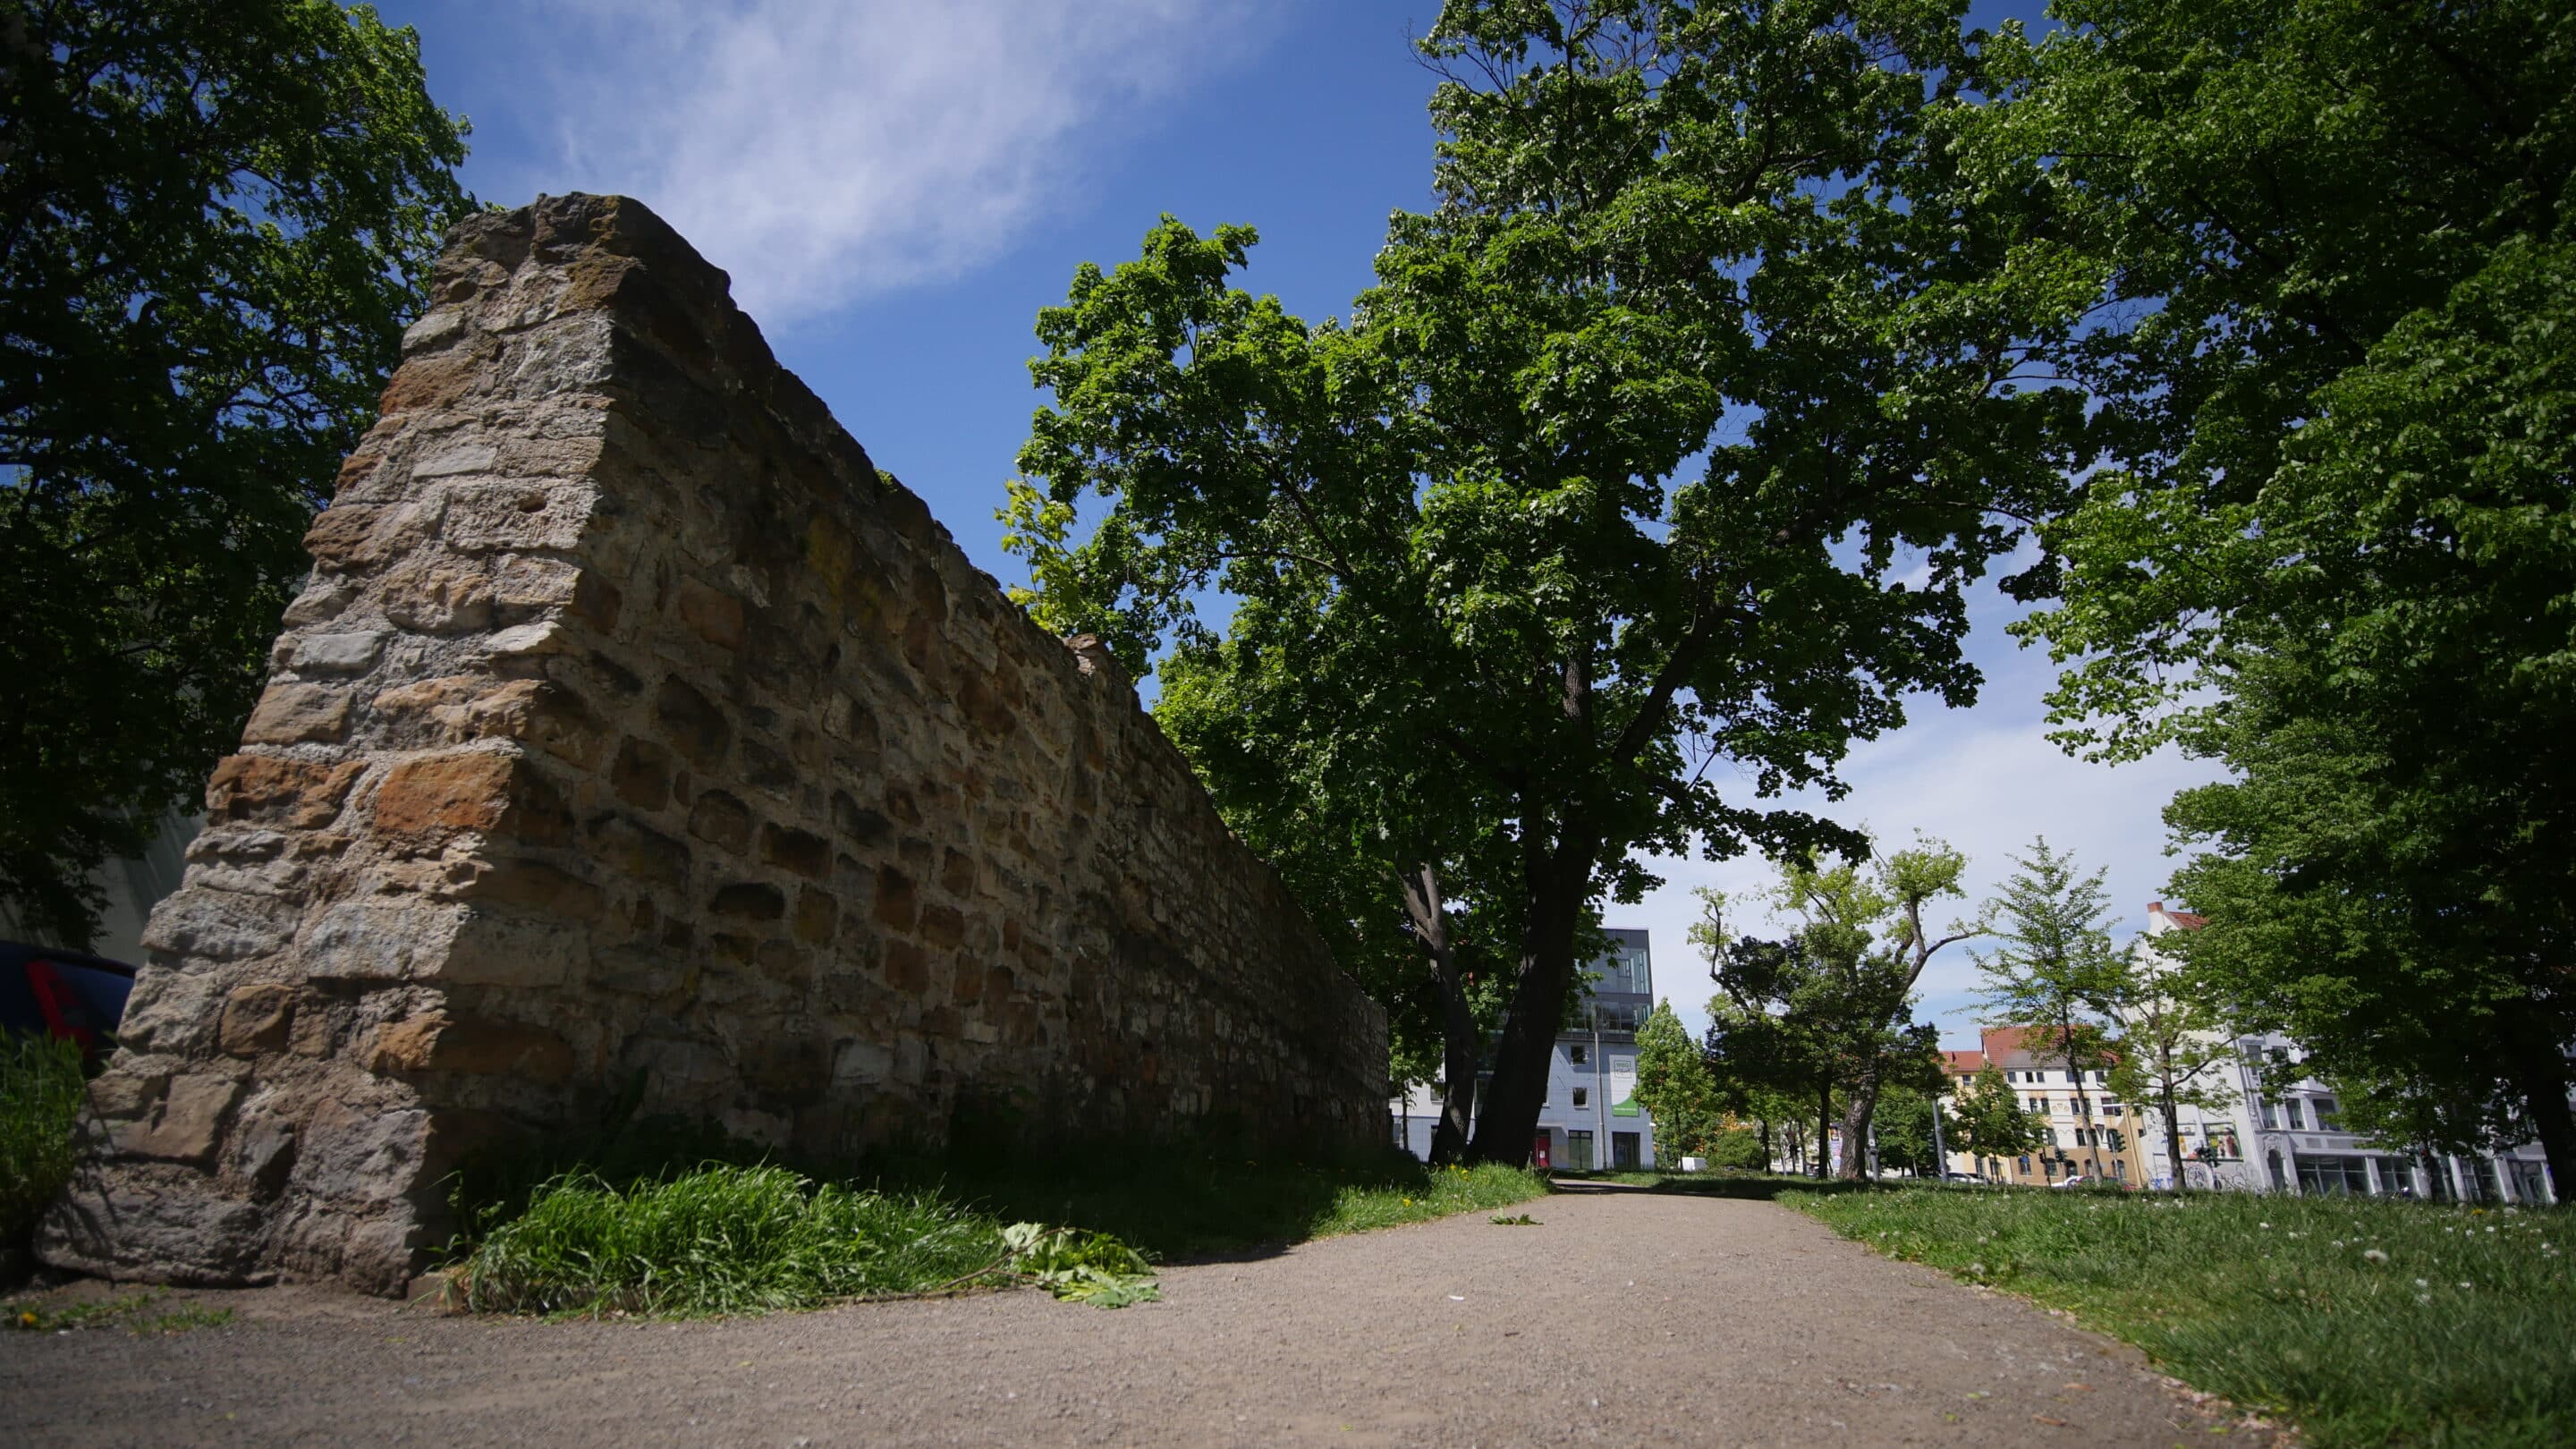 Johannesmauer an der Johannesstraße in Erfurt. Ehemalige innere mittelalterliche Stadtmauer.